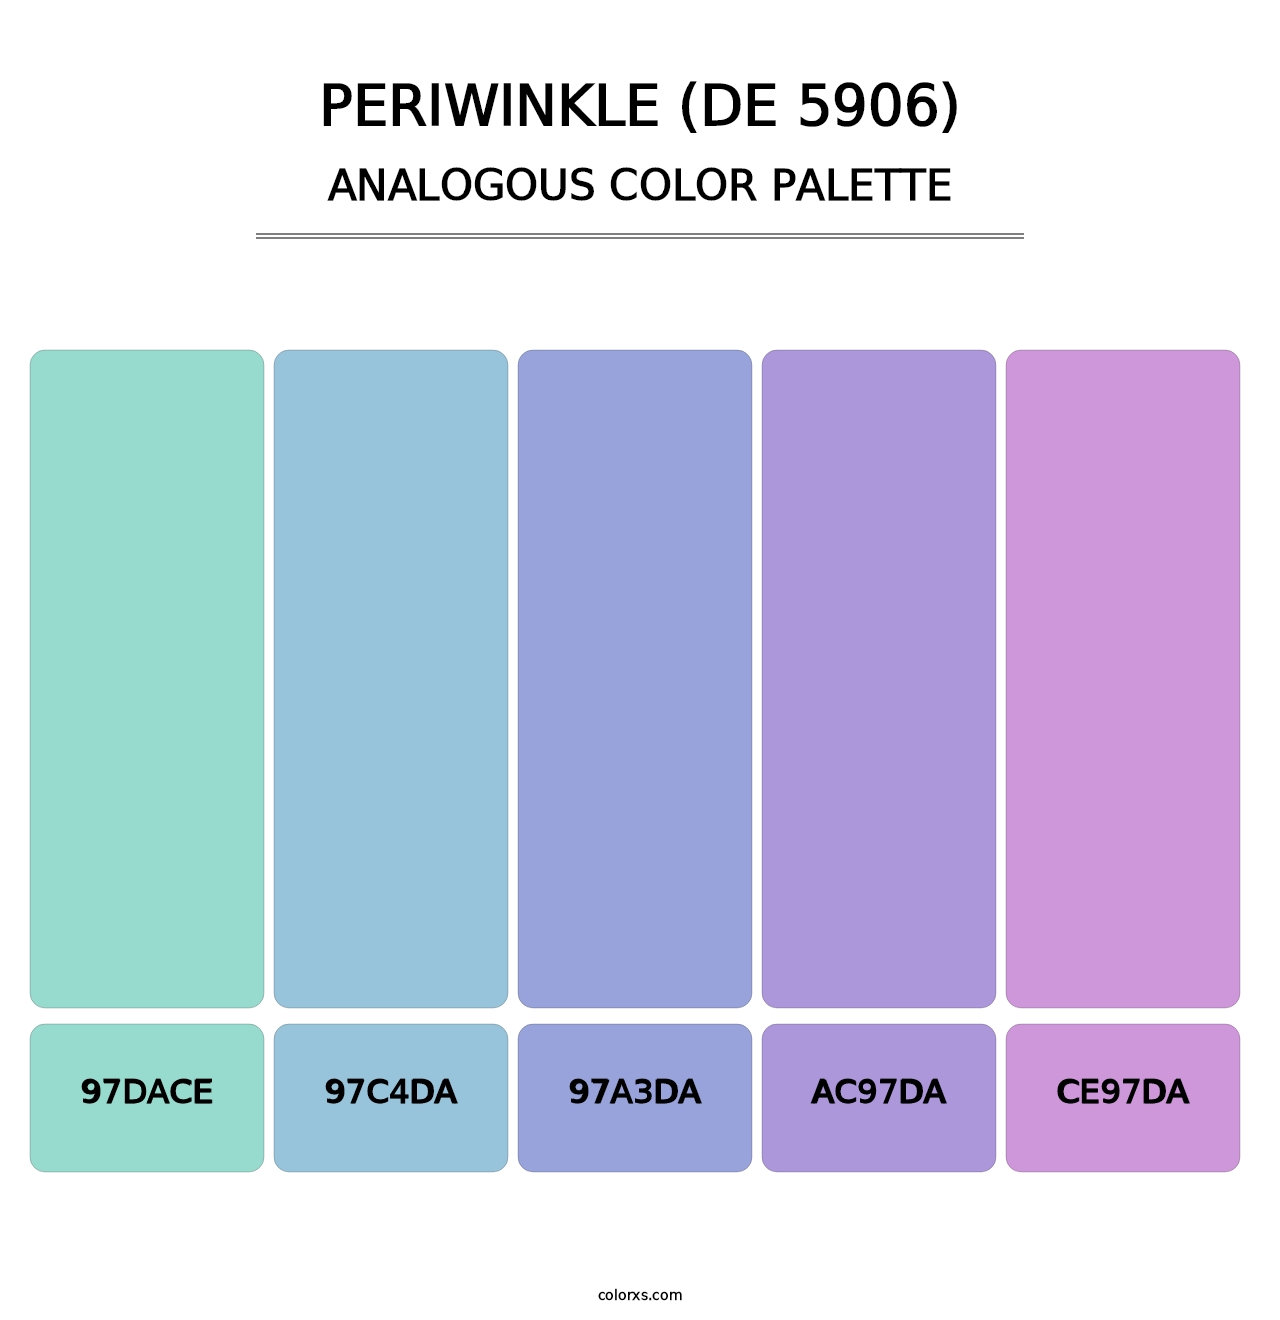 Periwinkle (DE 5906) - Analogous Color Palette